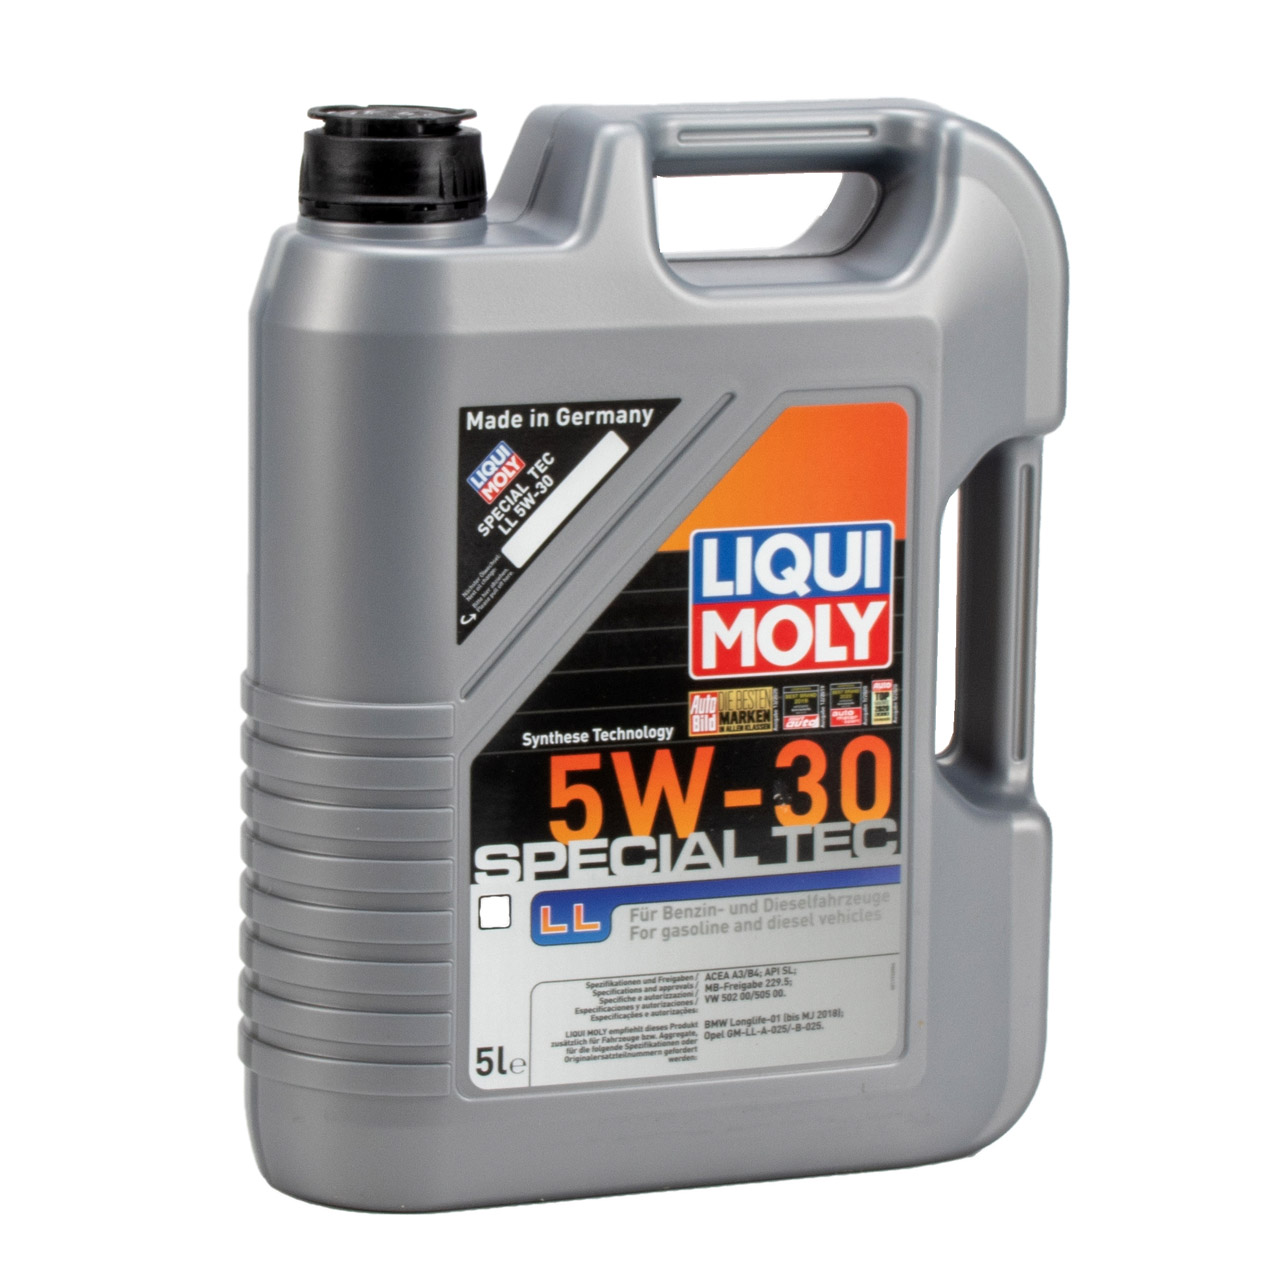 LIQUI MOLY Motoröl Öl SPECIAL TEC LL 5W30 MB 229.5 VW 502/505.00 - 5L 5 Liter